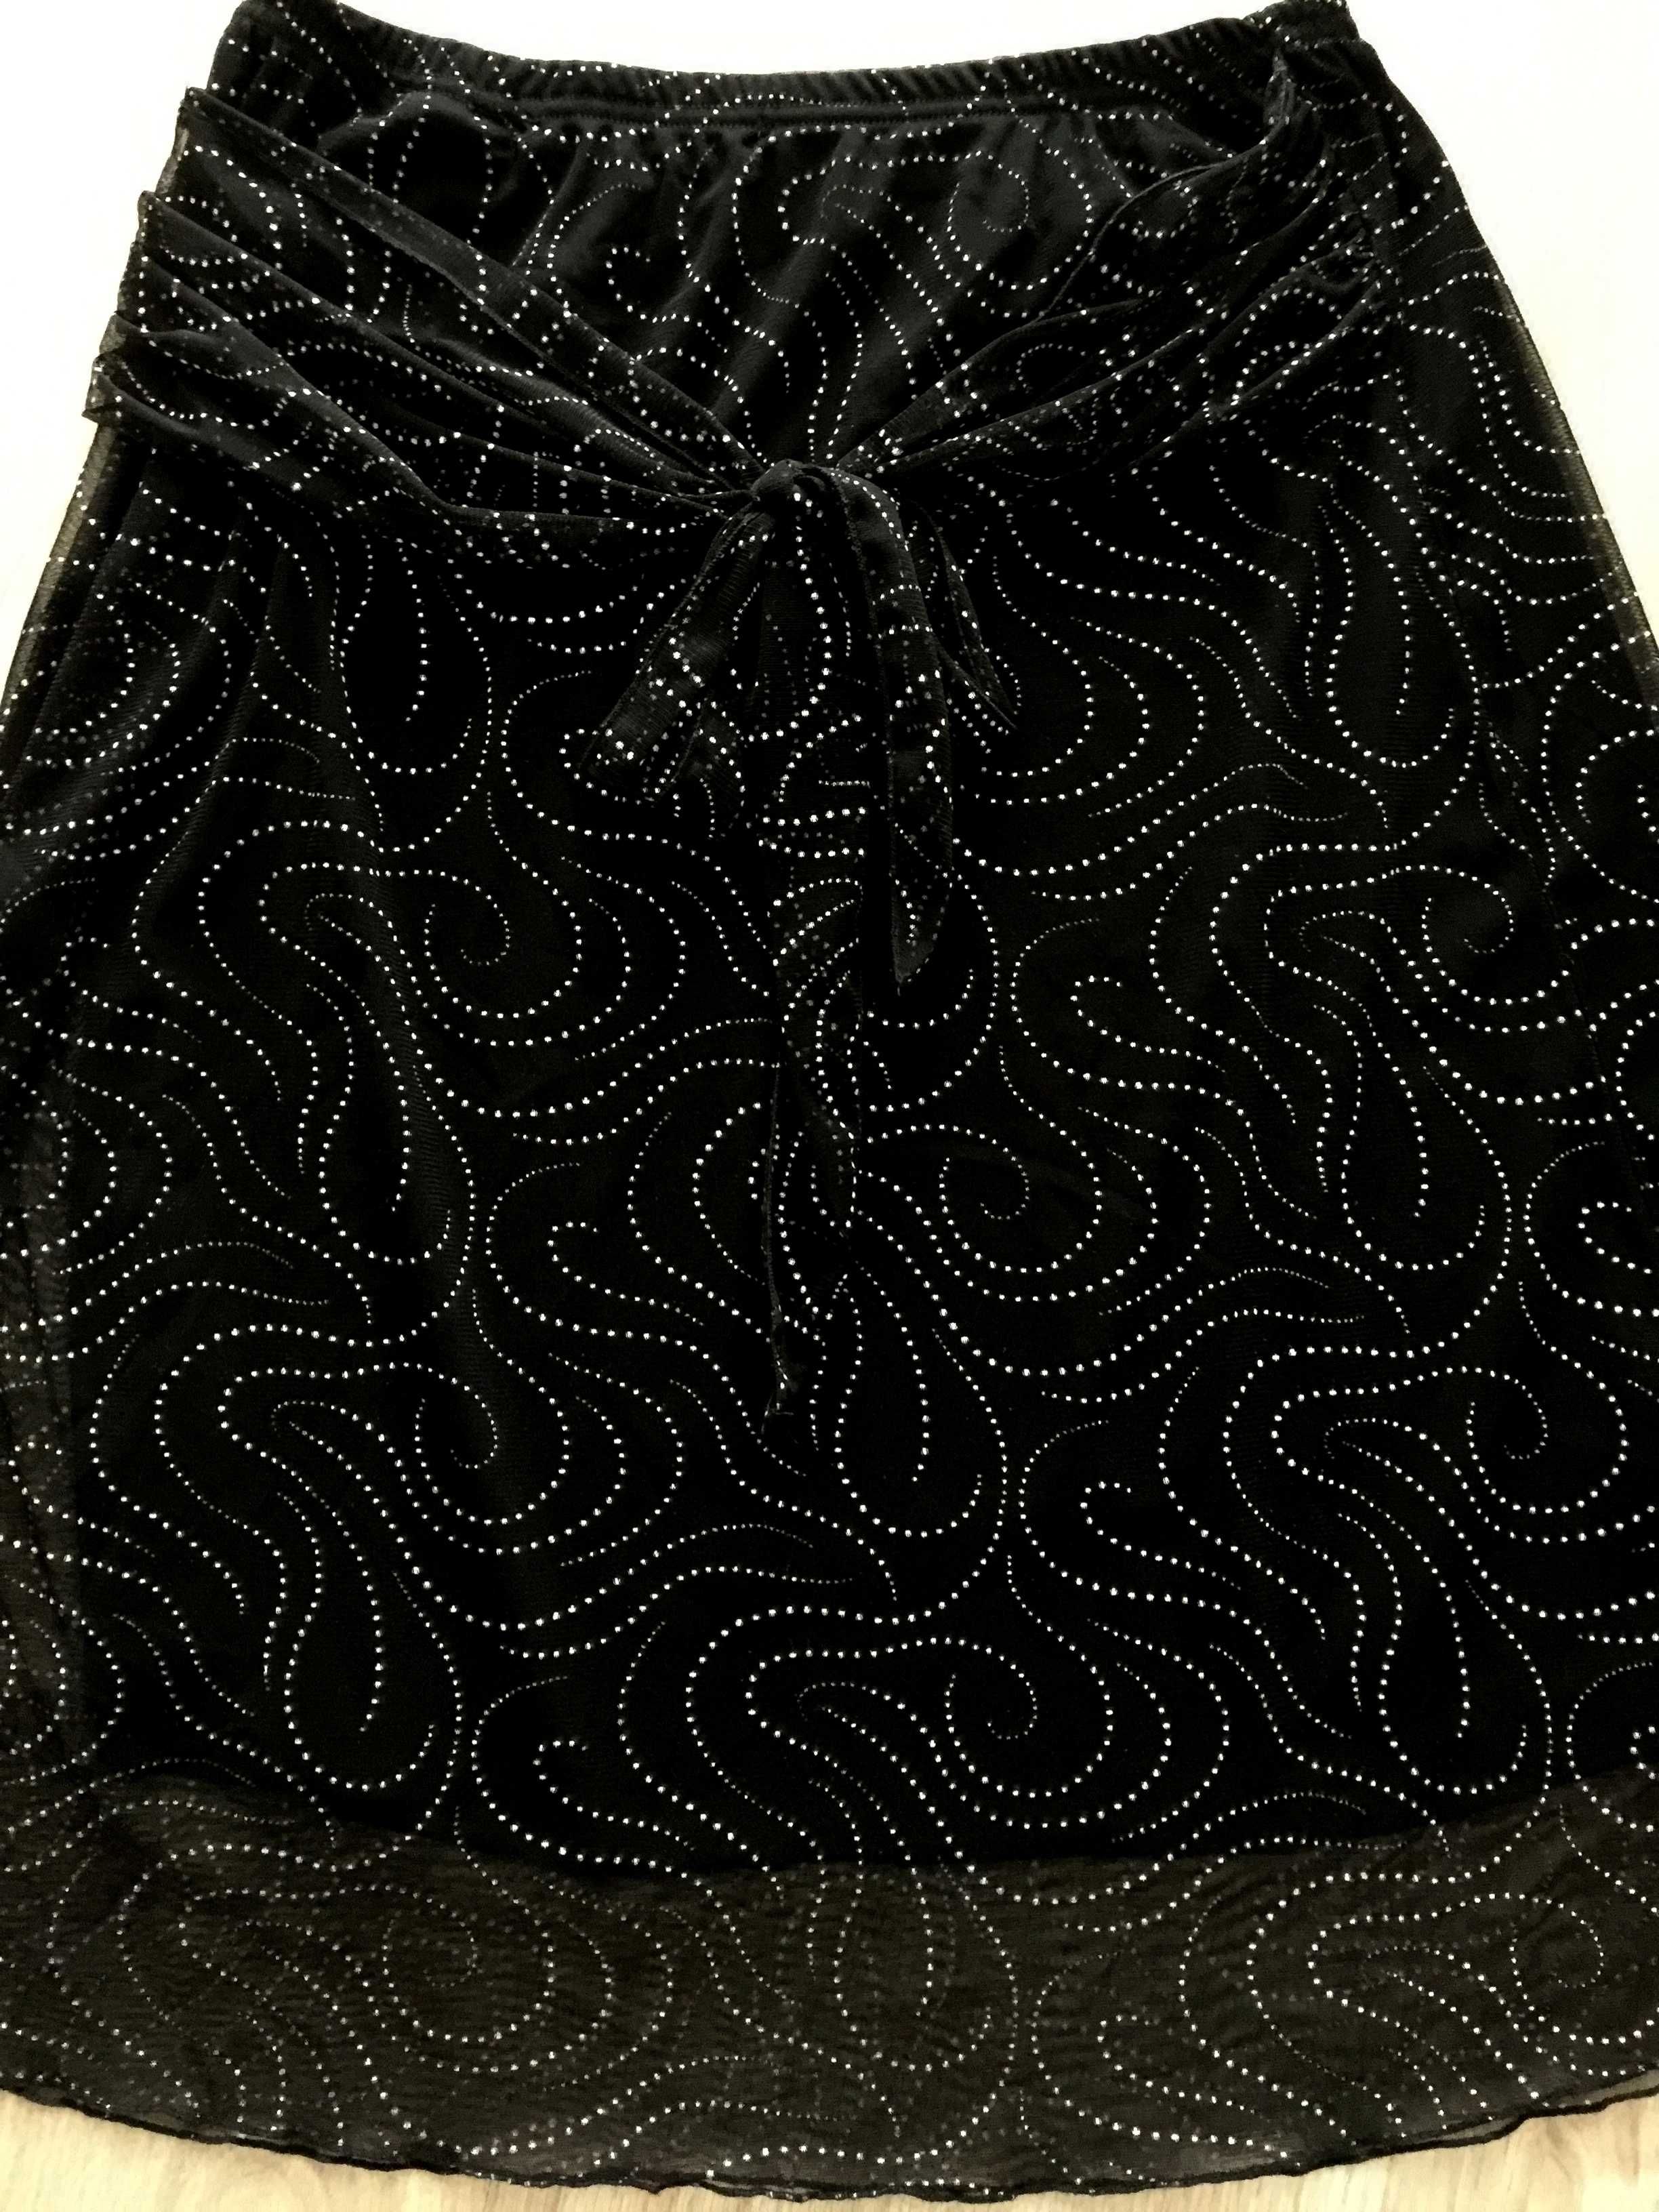 Spódniczka czarna z nikłym białym wzorem, rozmiar M, firmy Lipo